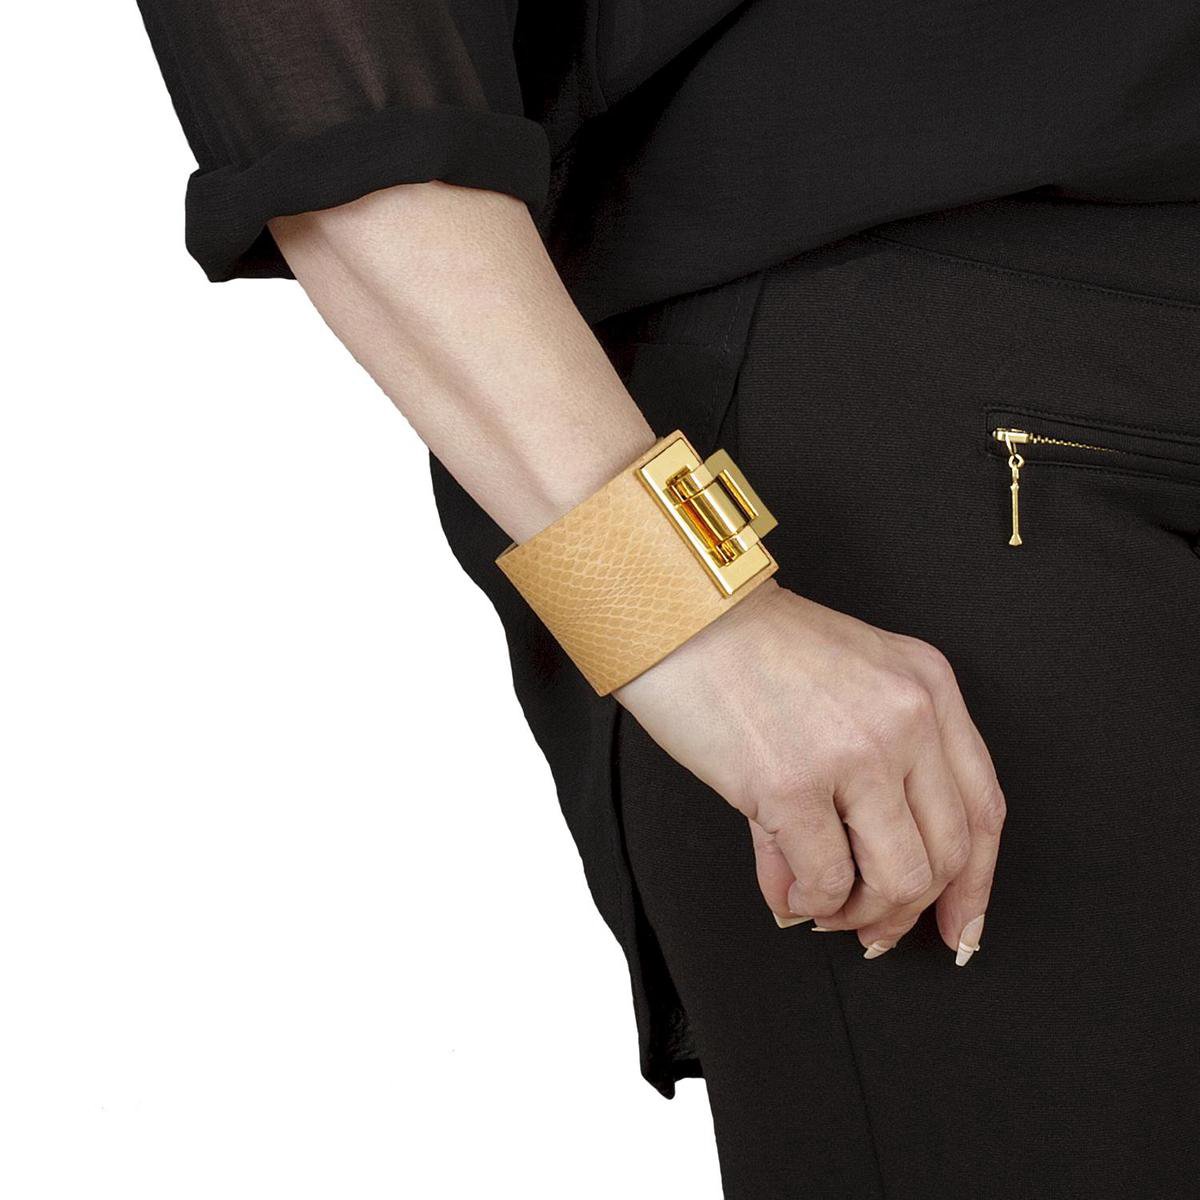 NEW SALE van 94,00 EUR afgeprijsd, BELUCIA dames armband ZK-04 kalfsleer mat camel, goudkleurig, maat 17 cm